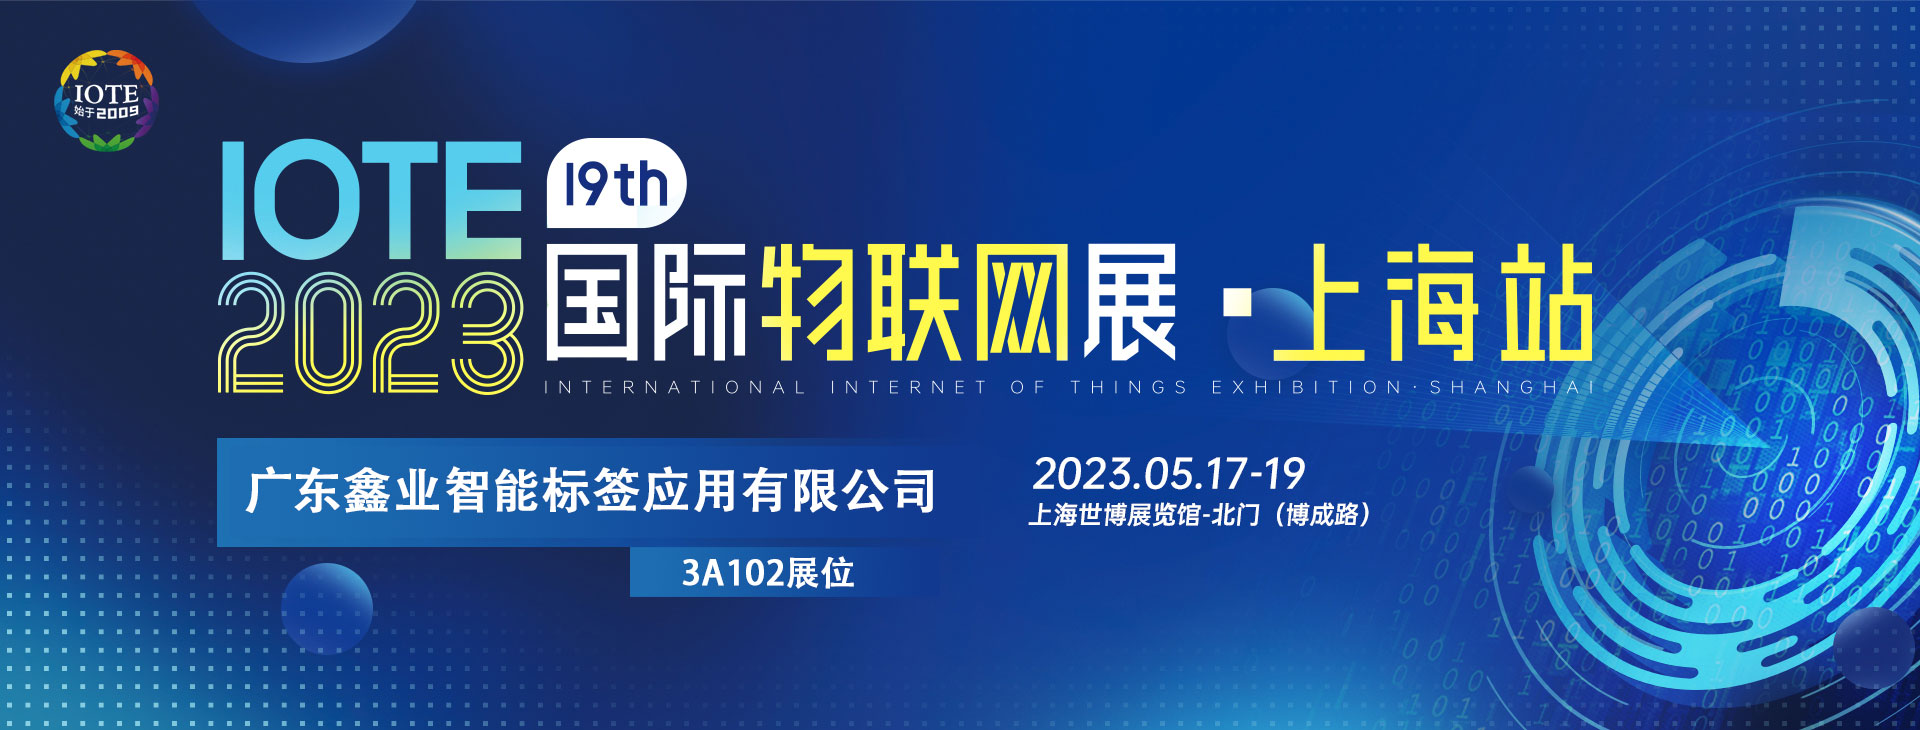 鑫业智能将亮相IOTE 2023第十九届国际物联网展上海站